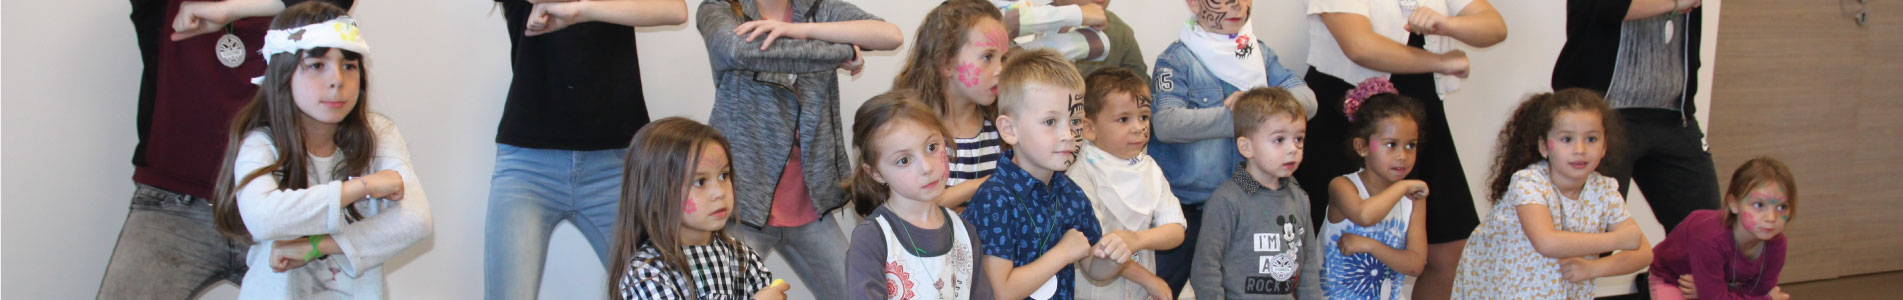 Telenco’s children put on a show for « Les enfants de l’Ovale »